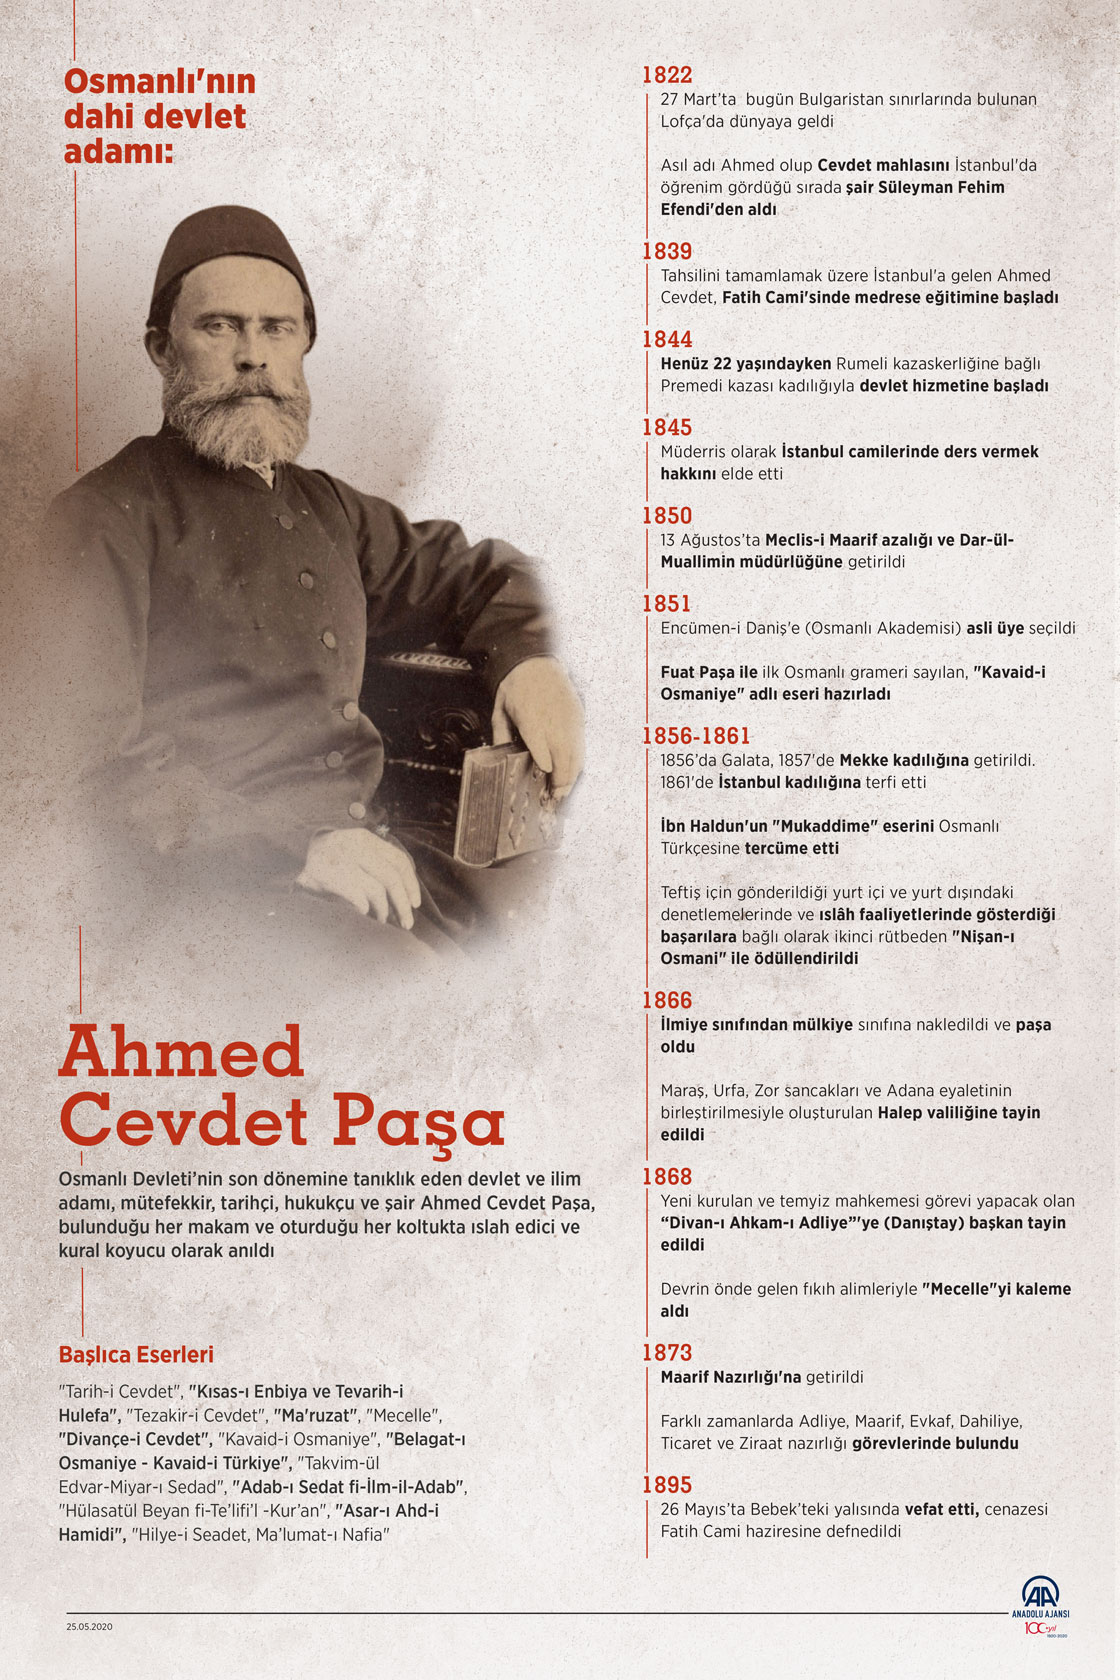 Osmanlı'nın dahi devlet adamı: Ahmed Cevdet Paşa